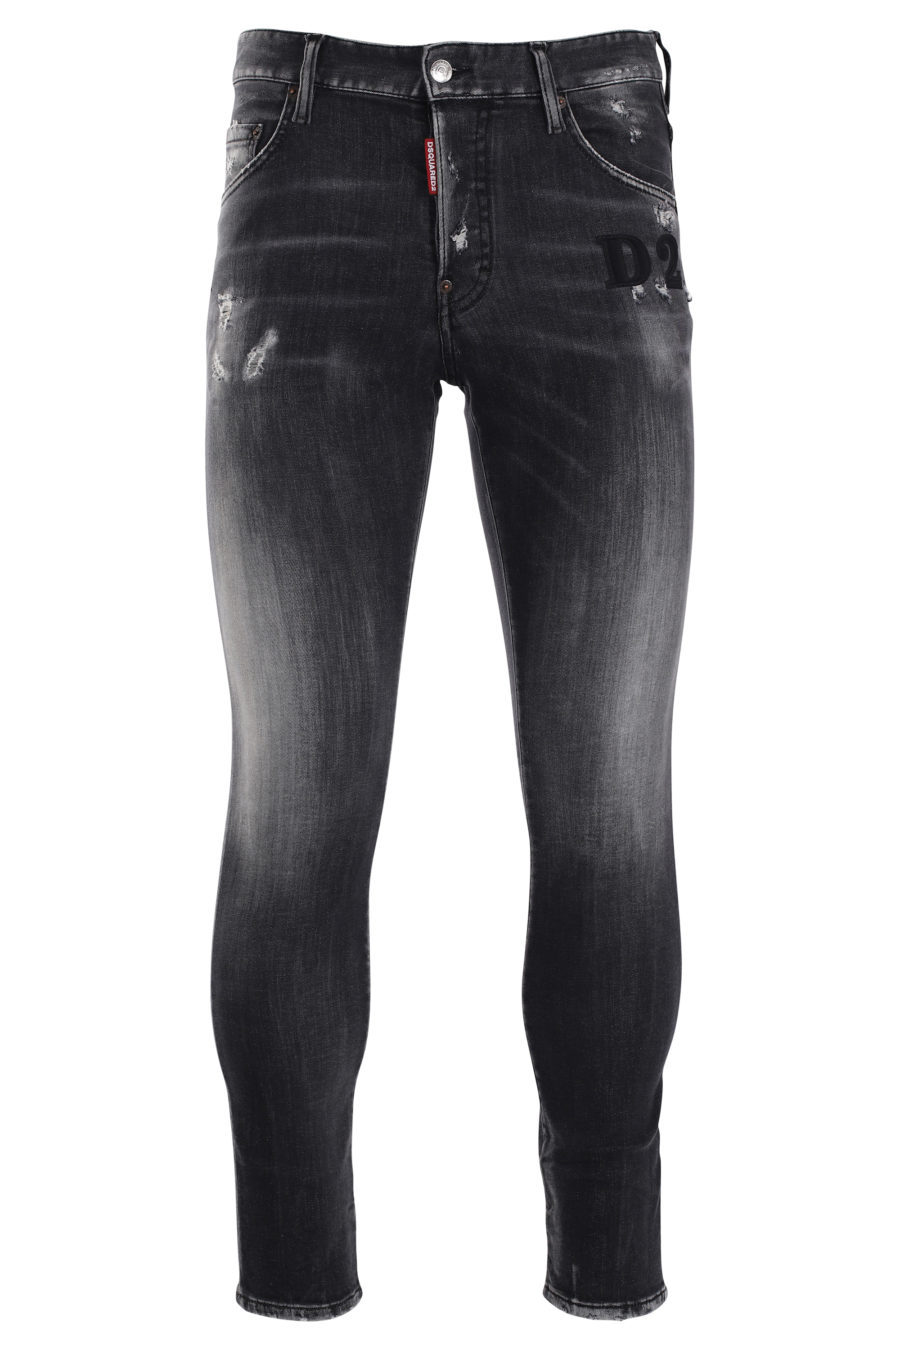 Skaterhose aus Denim mit schwarzer abgewetzter Jeans und schwarzem "D2"-Logo - IMG 9986